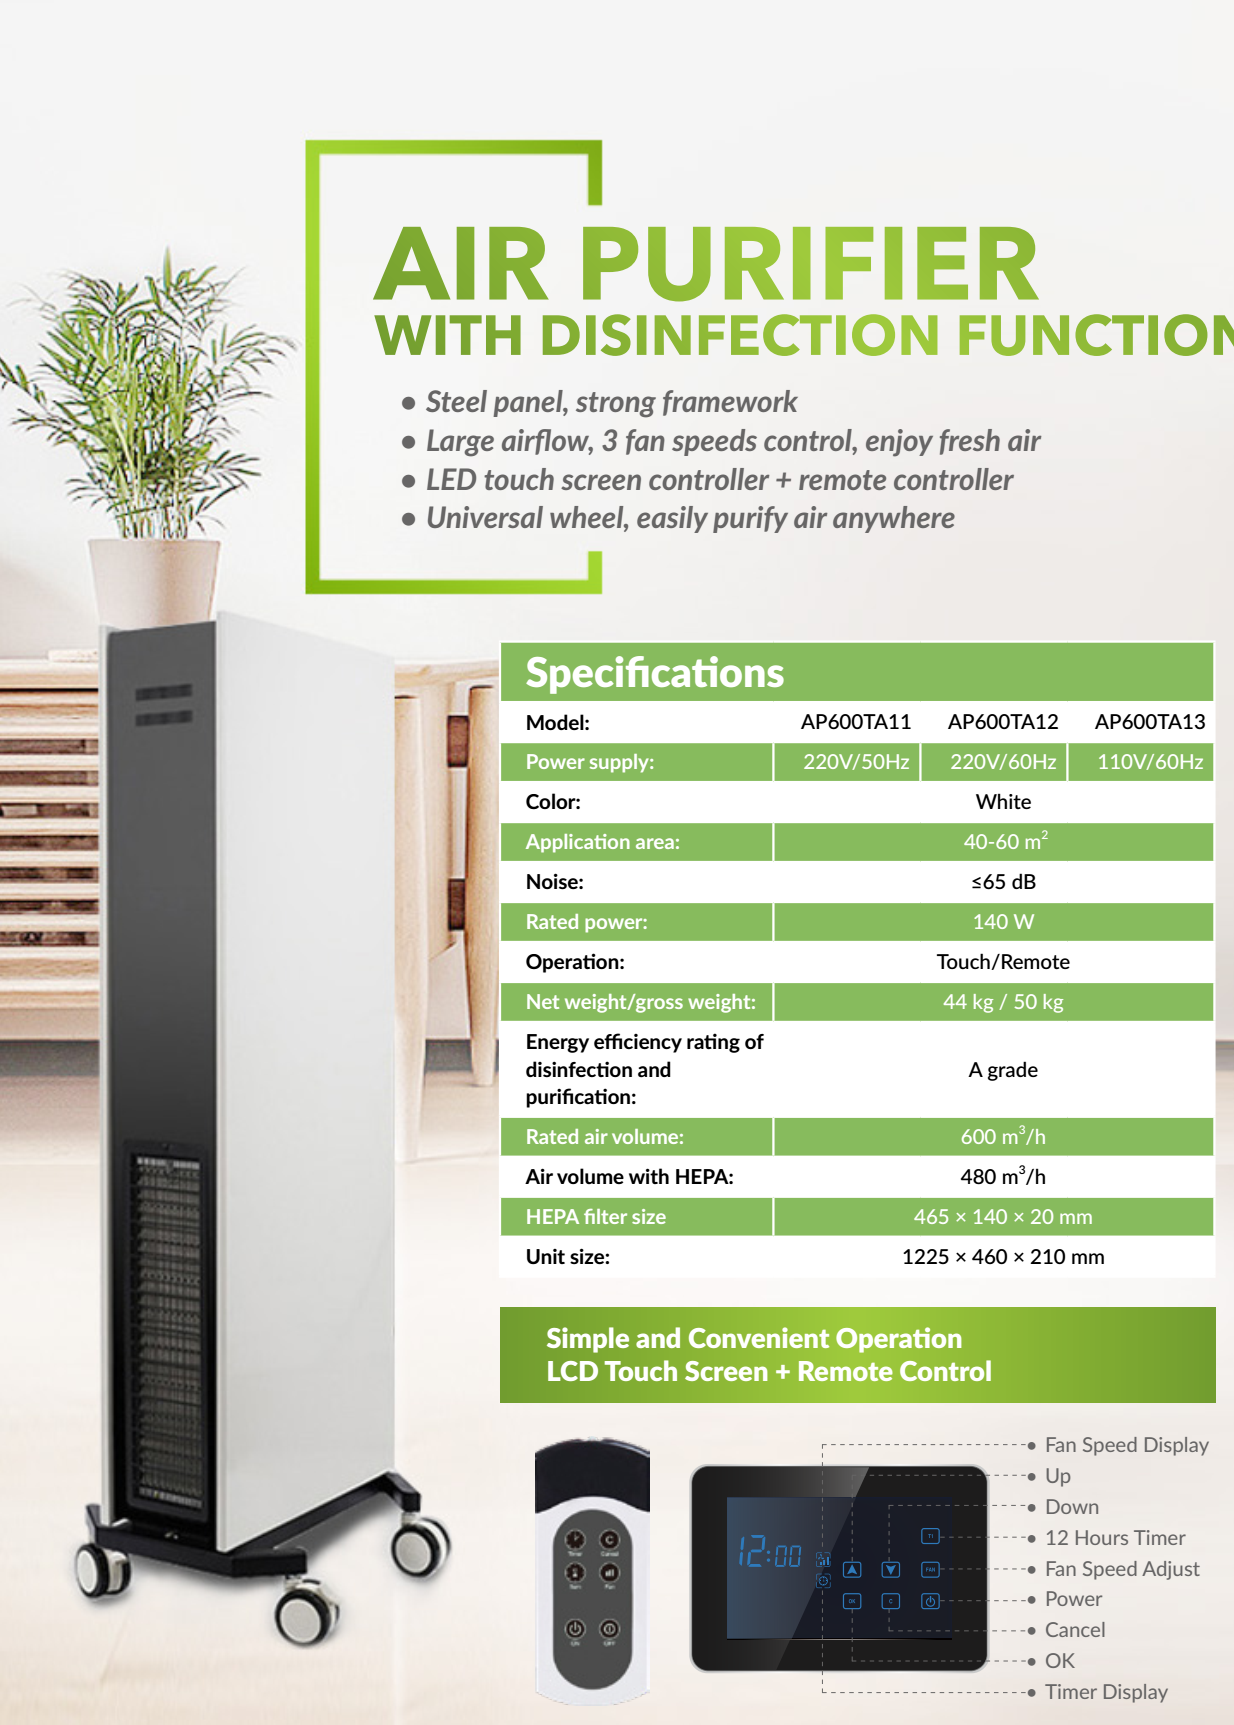 especificação de desinfecção do purificador de ar